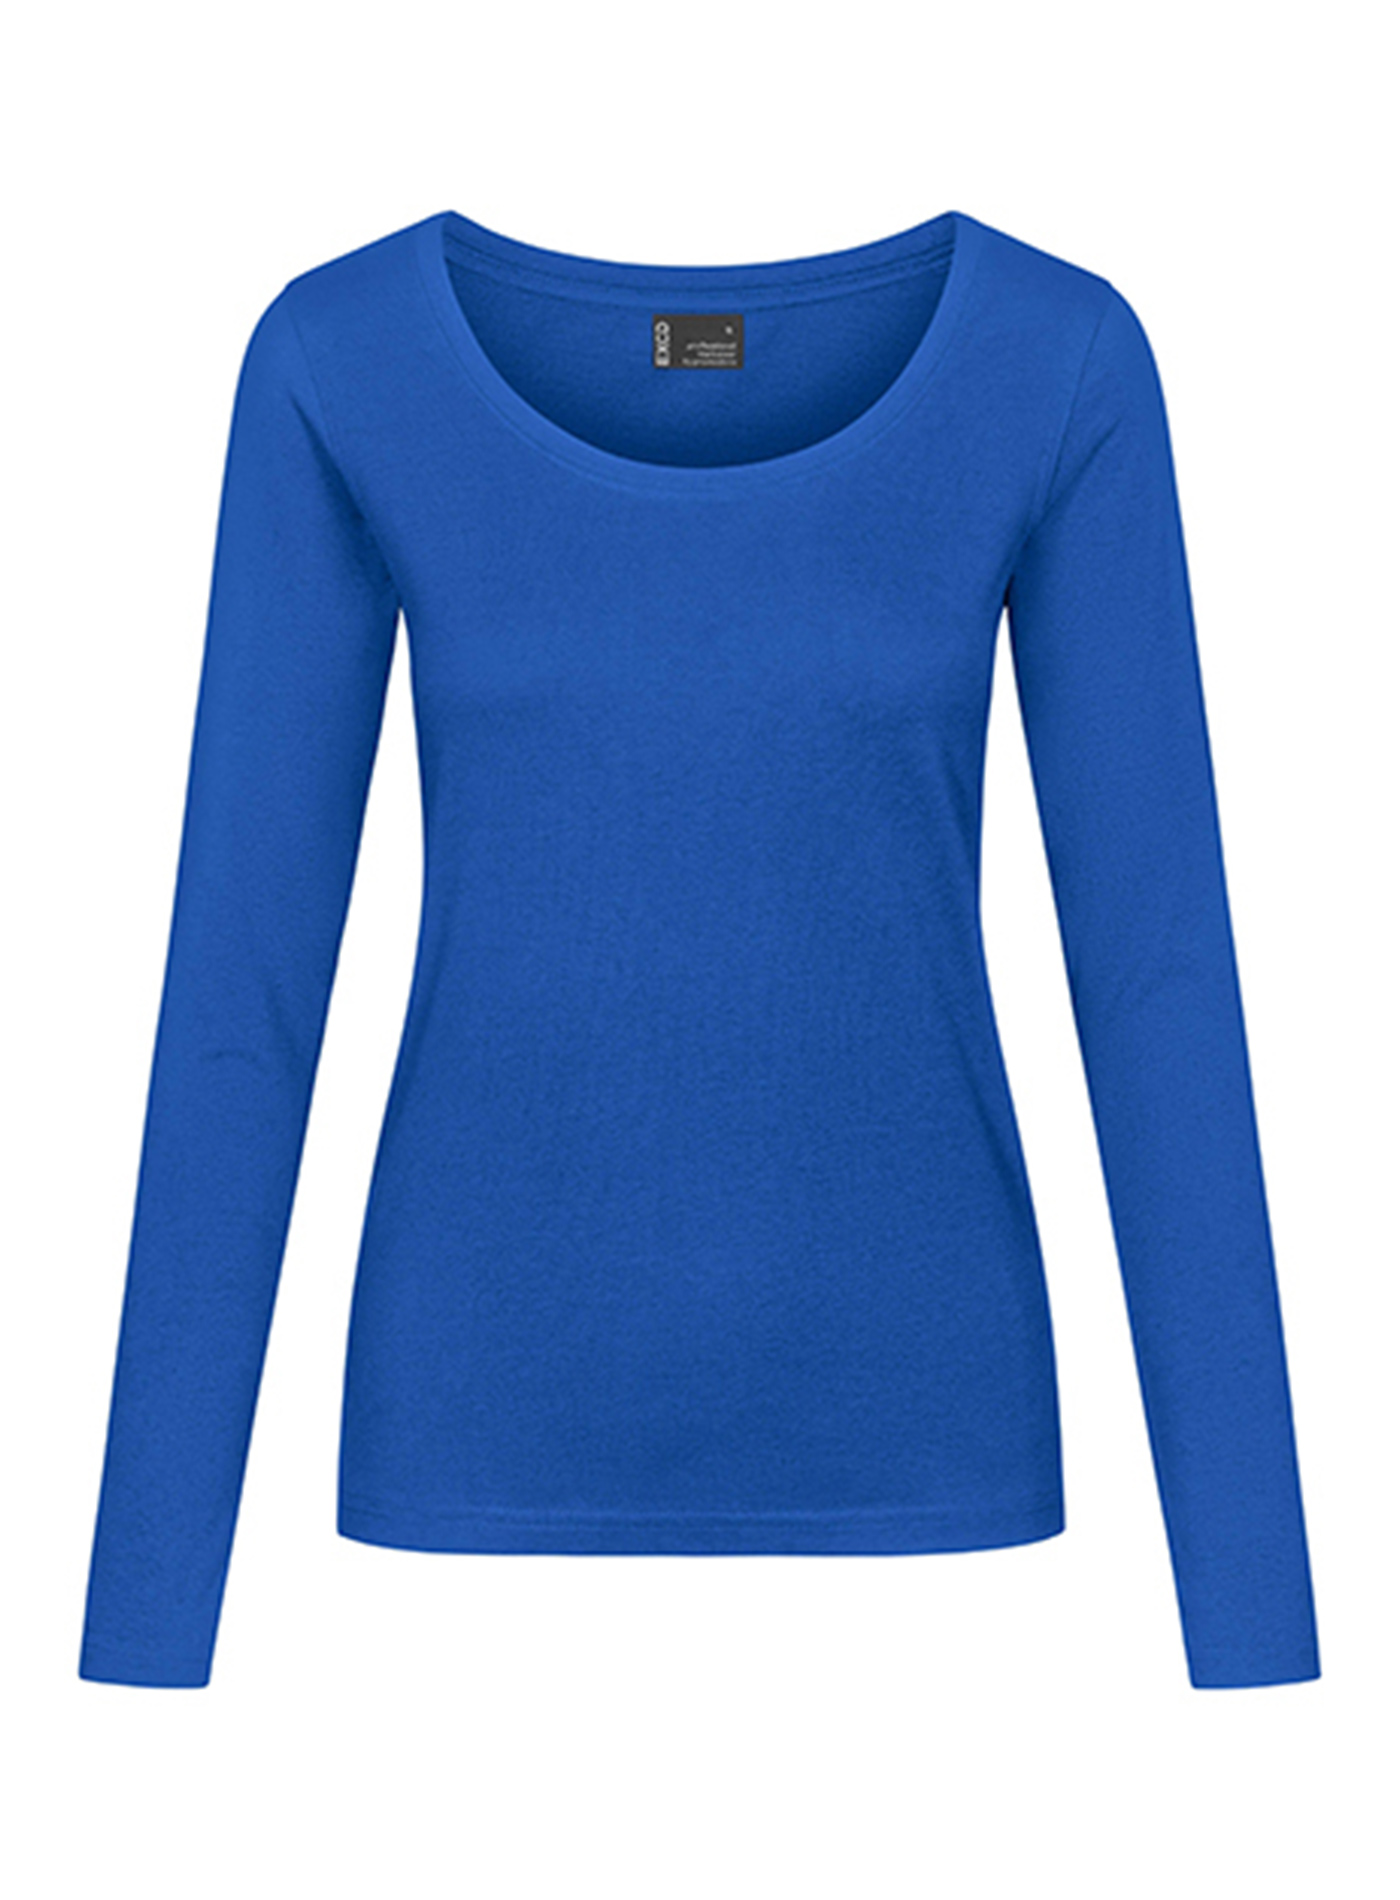 Dámské tričko s dlouhým rukávem Promodoro - Kobaltová modř M